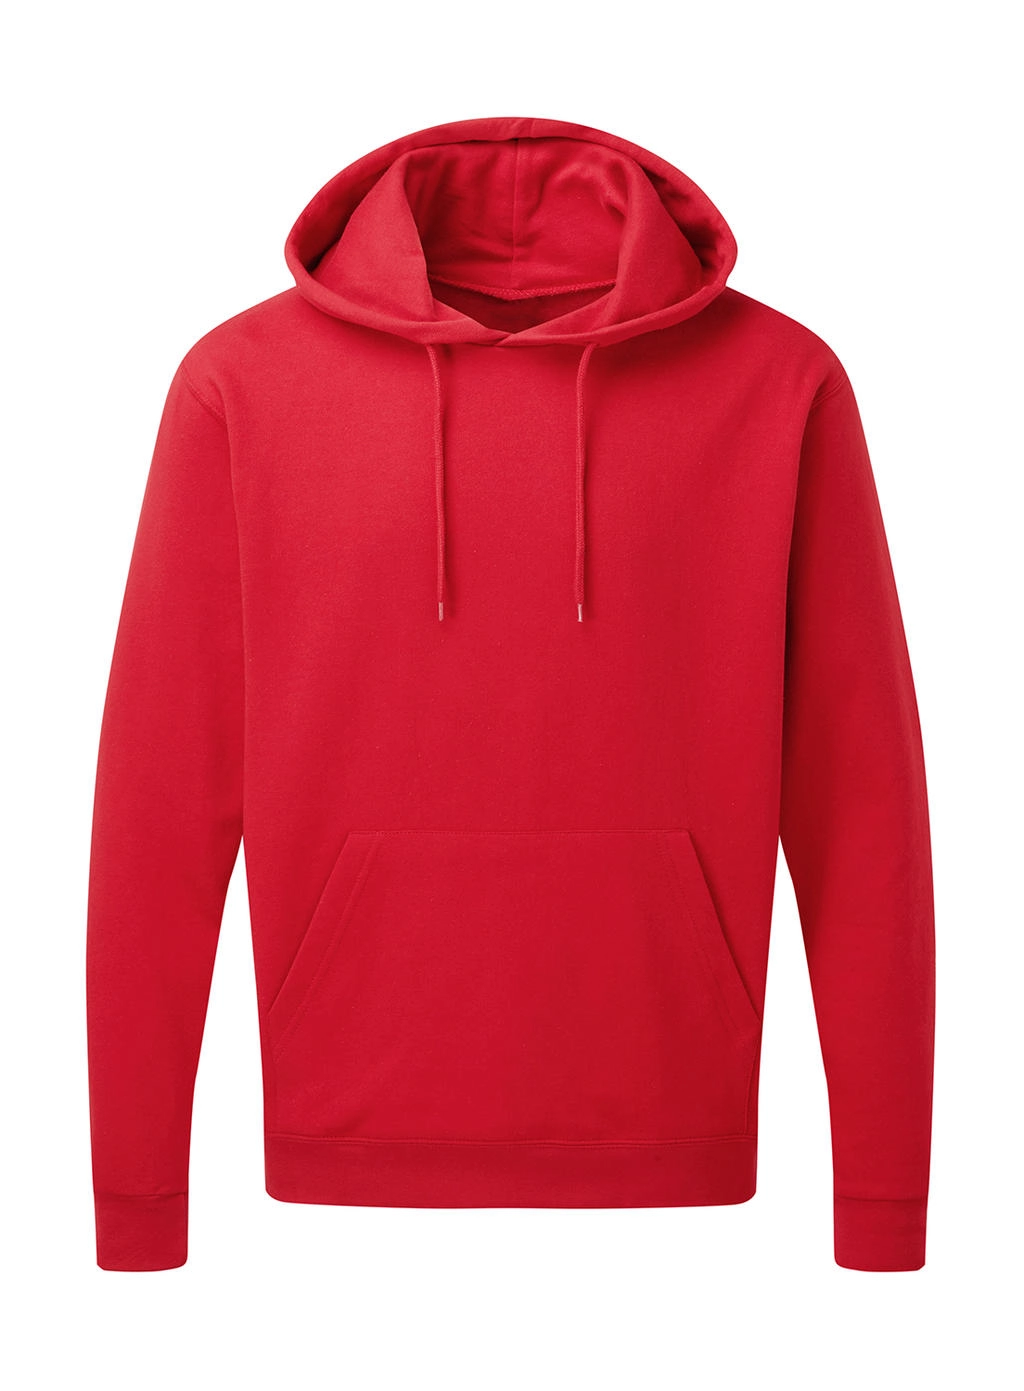 Hooded Sweatshirt Men zum Besticken und Bedrucken in der Farbe Red mit Ihren Logo, Schriftzug oder Motiv.